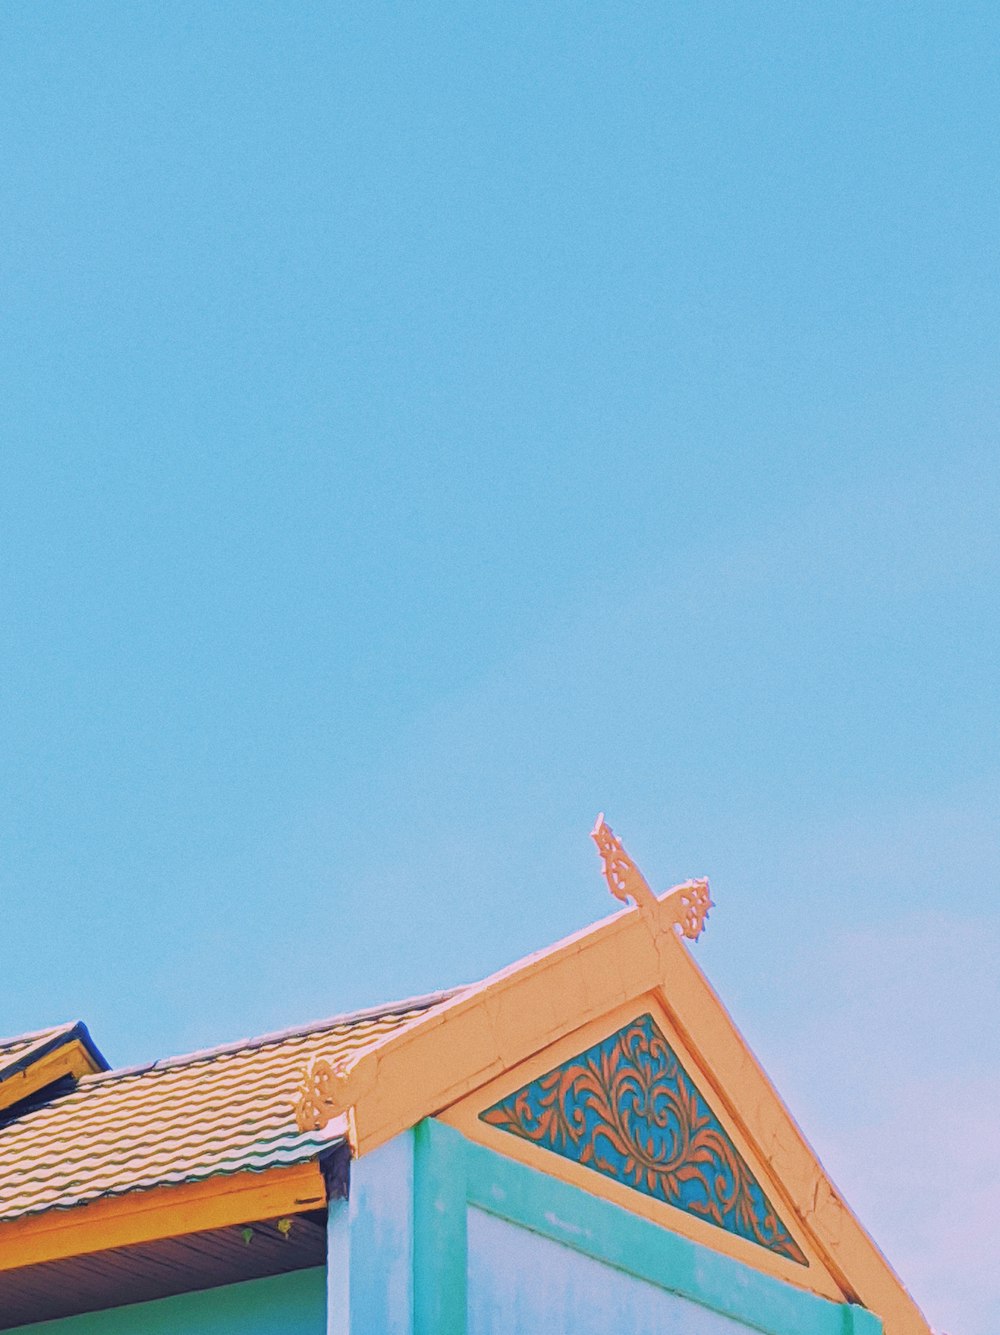 Eine Uhr auf dem Dach eines Gebäudes mit blauem Himmel im Hintergrund